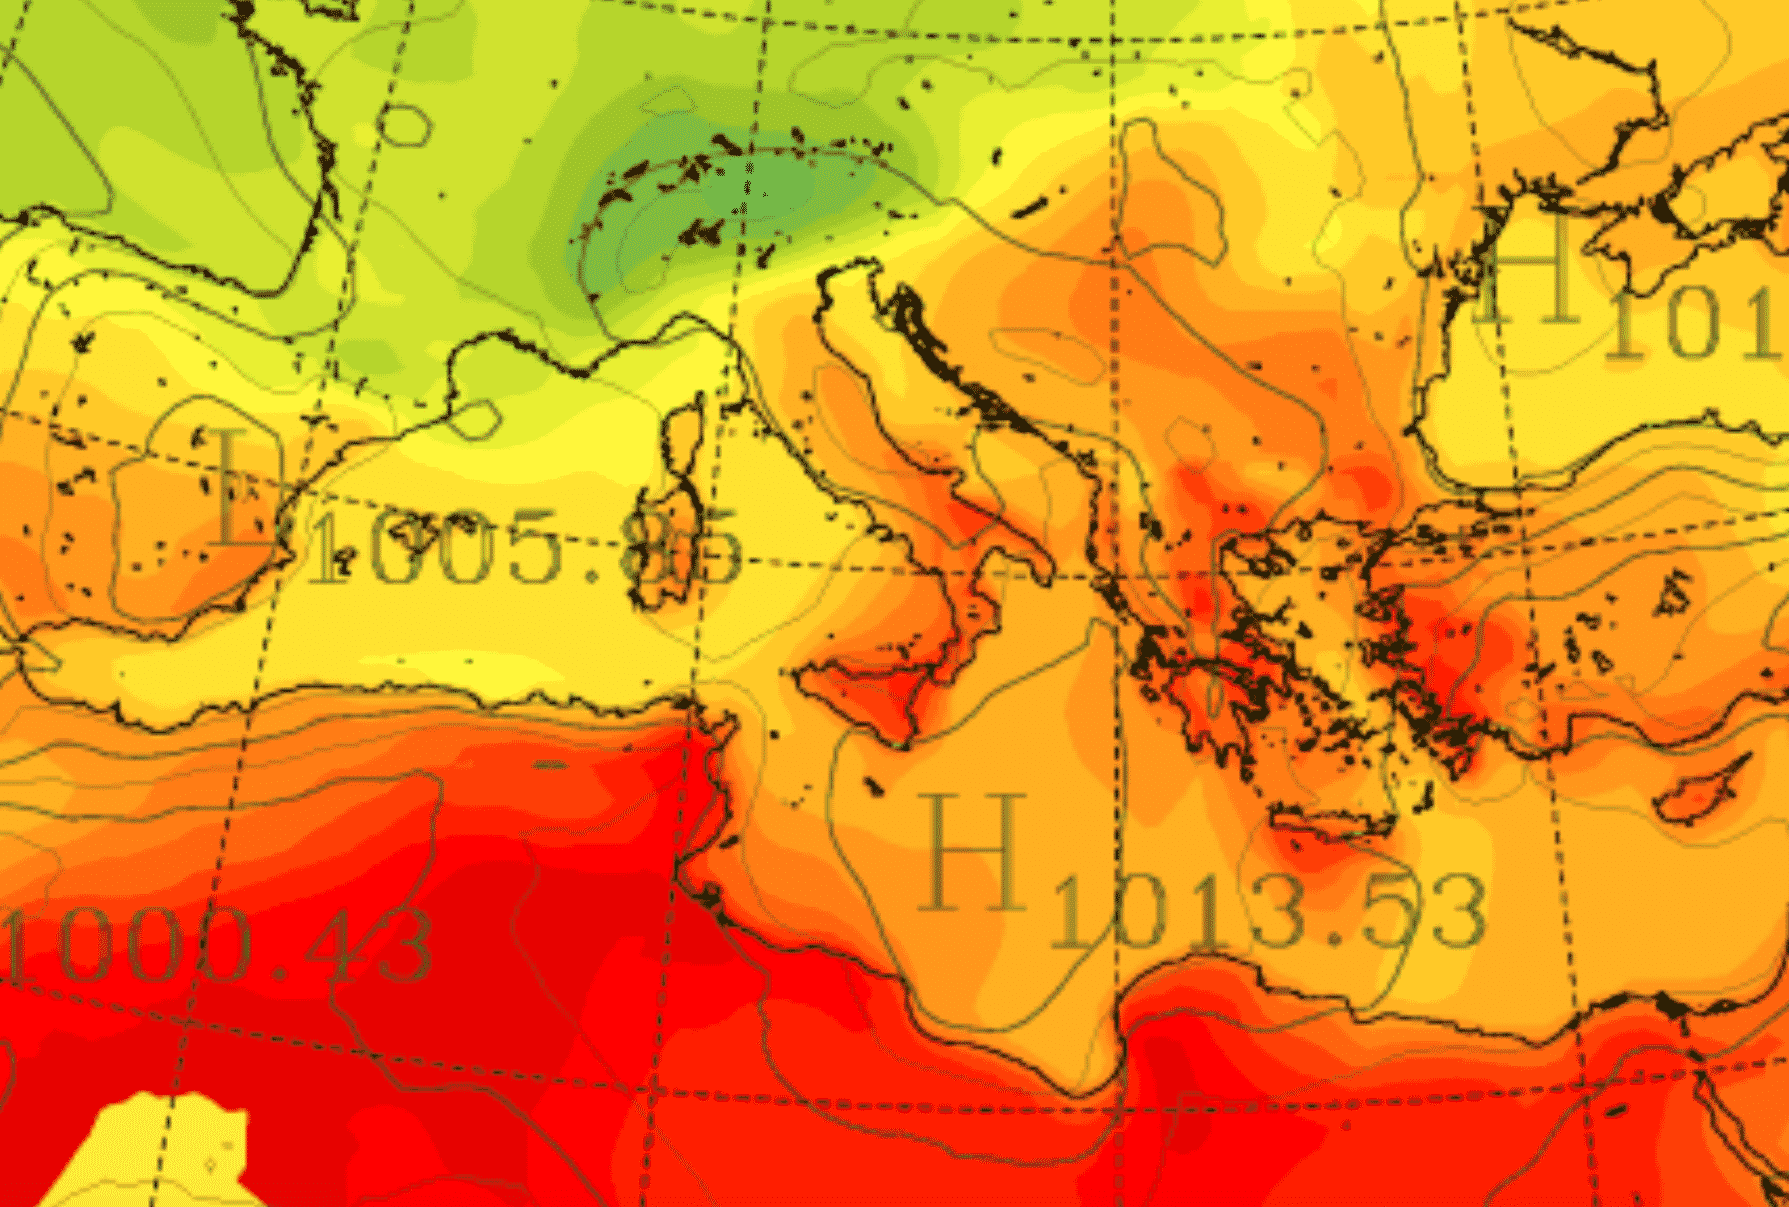 Meteo, Sicilia “infernale”: oggi punte di 45°C: allerta 3 su 3 per Catania e Palermo, rischio incendi